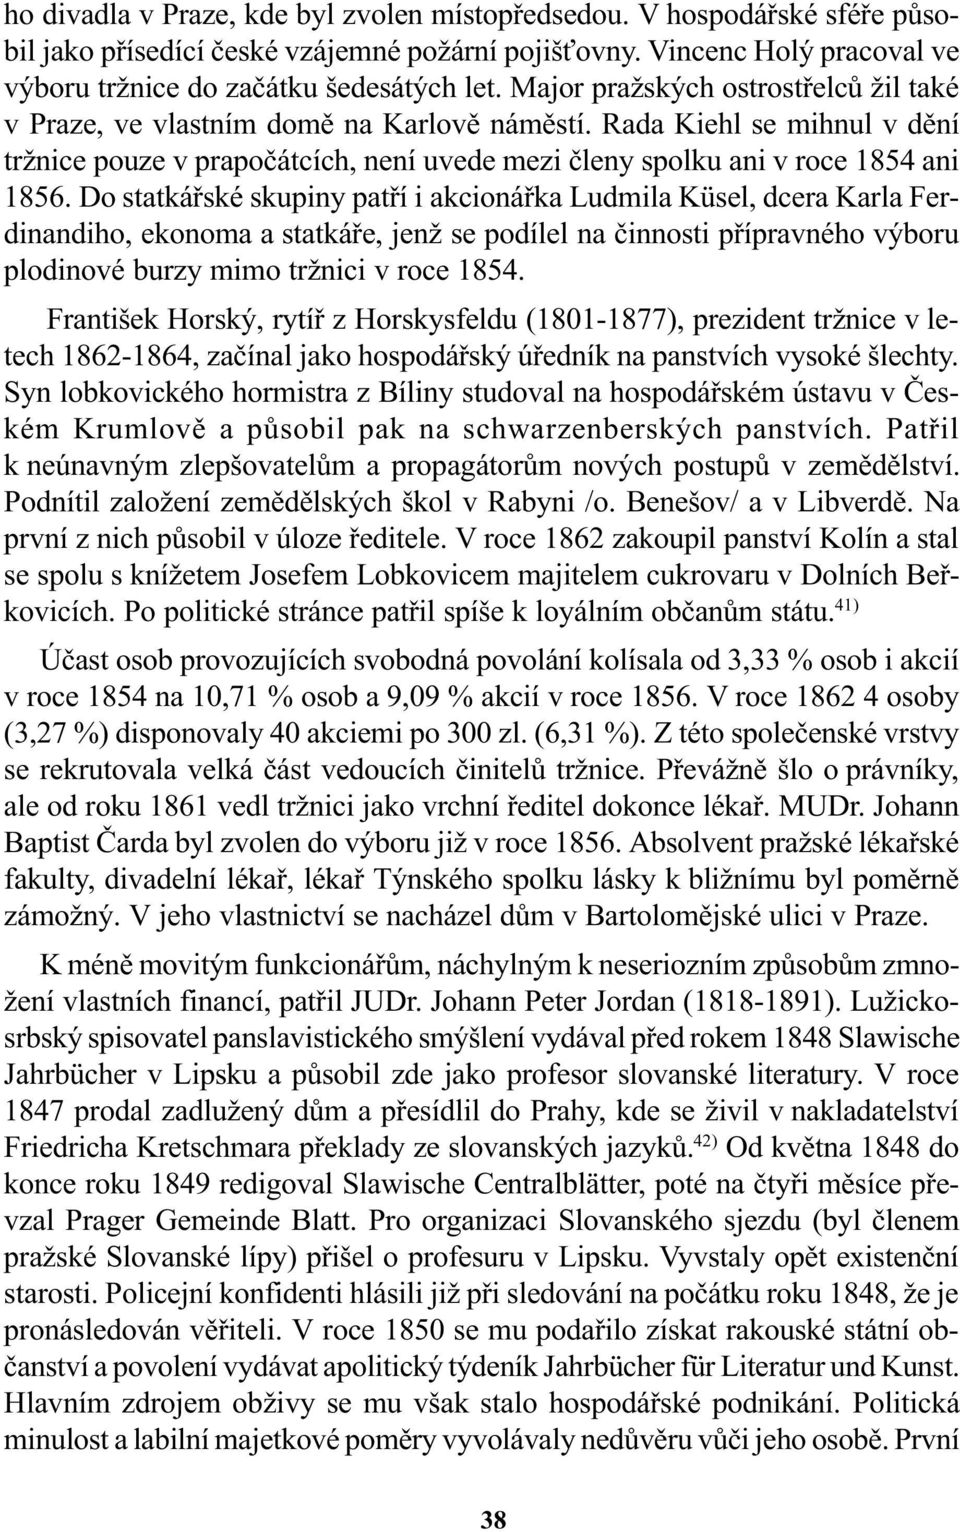 Do statkáøské skupiny patøí i akcionáøka Ludmila Küsel, dcera Karla Ferdinandiho, ekonoma a statkáøe, jenž se podílel na èinnosti pøípravného výboru plodinové burzy mimo tržnici v roce 854.